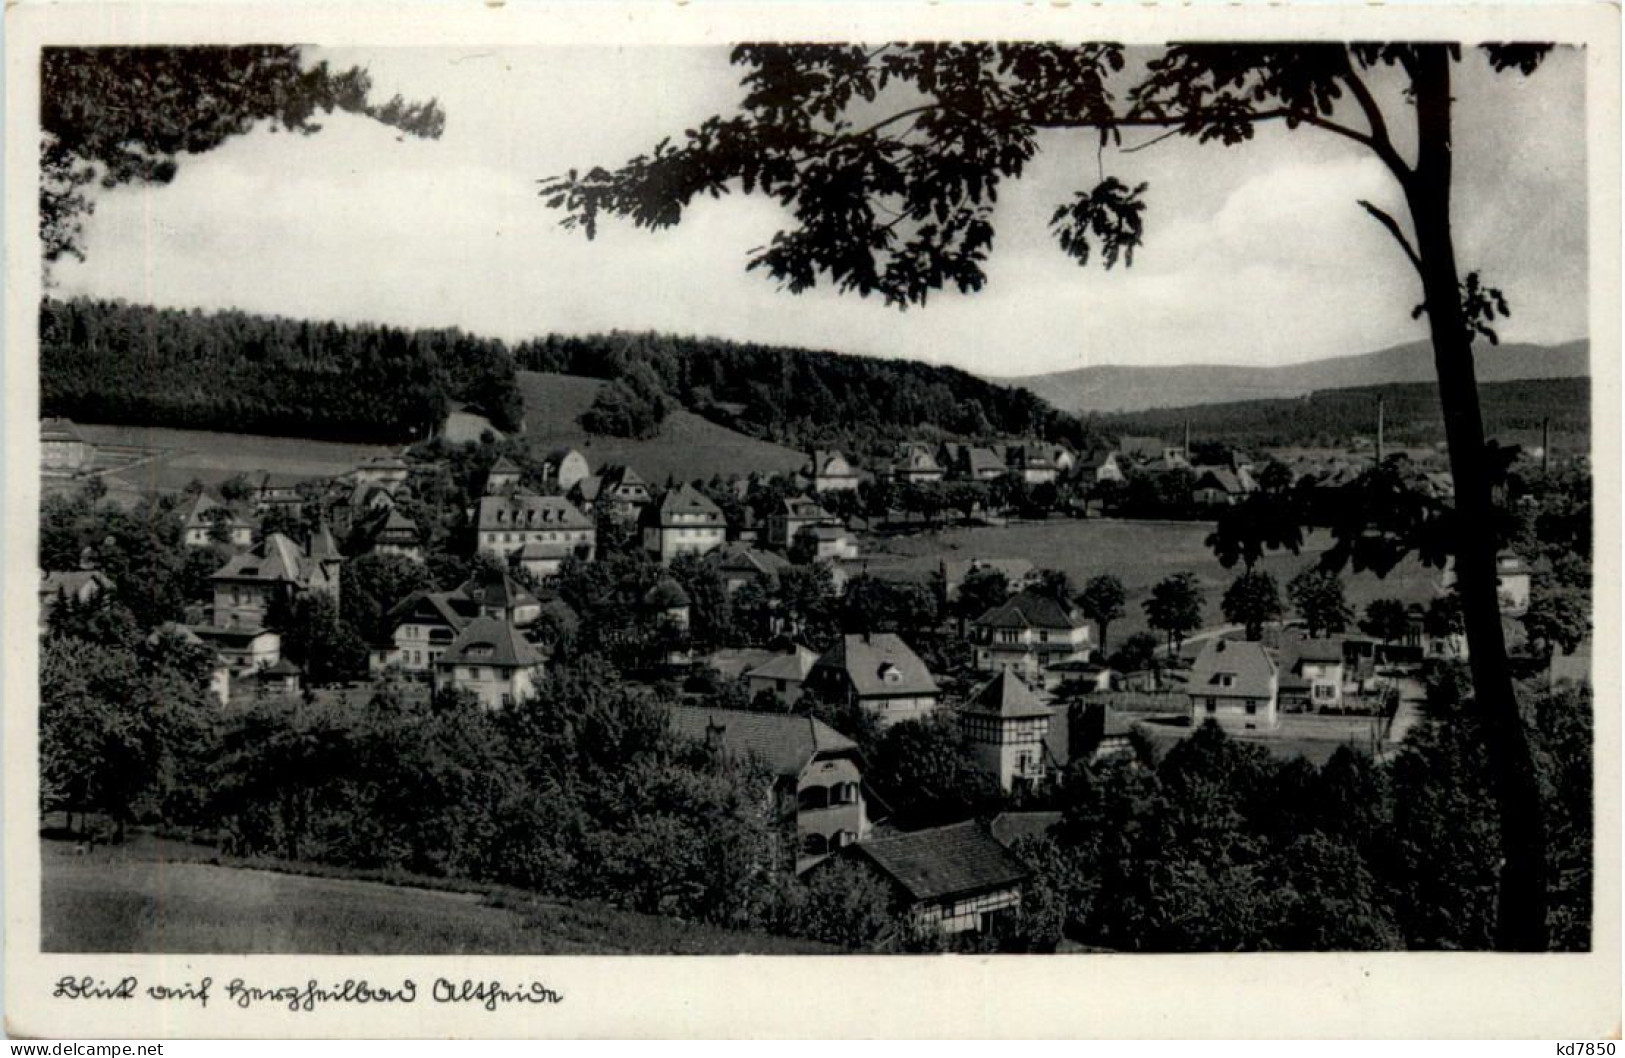 Altkirch - Altkirch